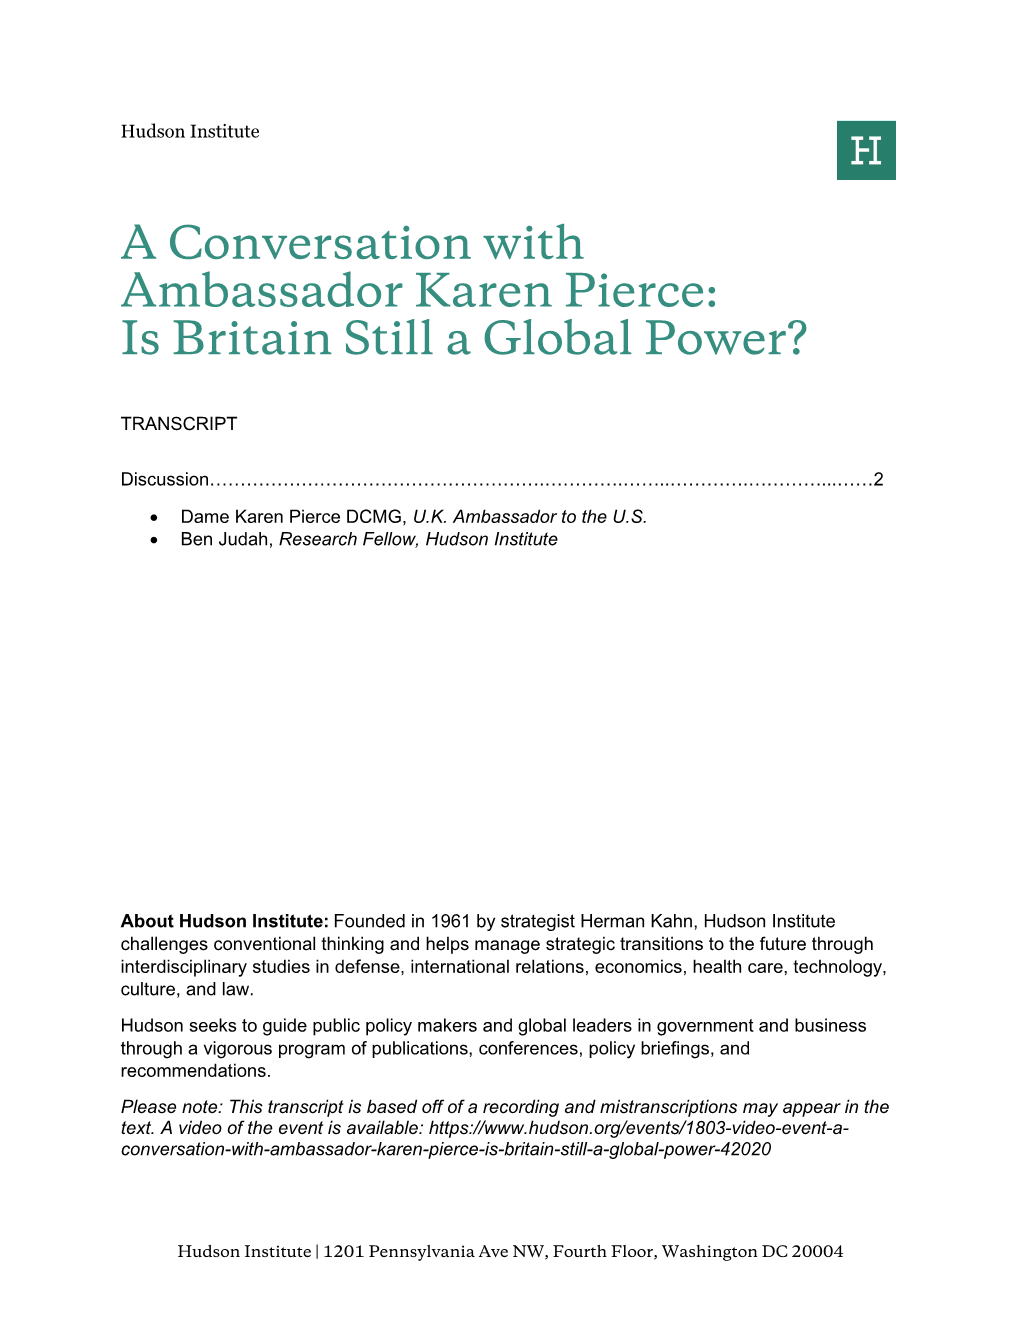 A Conversation with Ambassador Karen Pierce: Is Britain Still a Global Power?